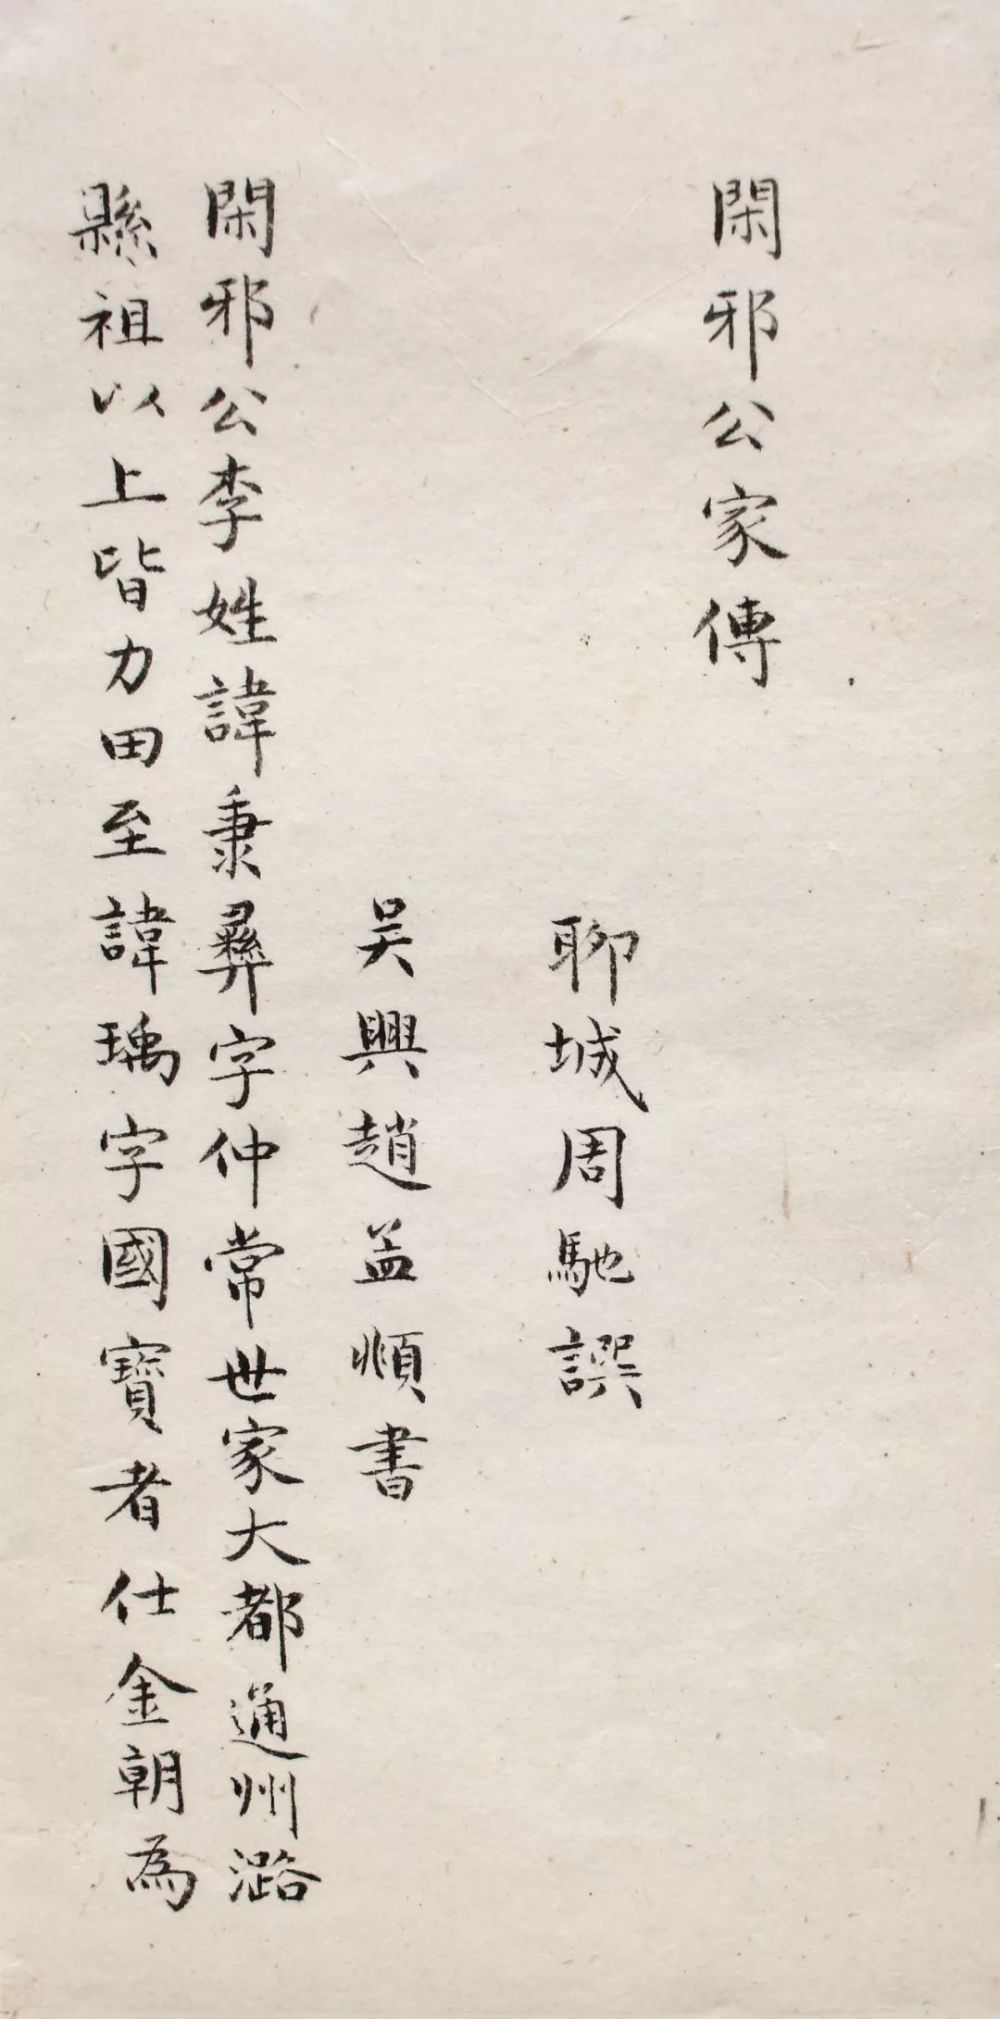 他为台北故宫写匾,终其一生与书法为伴